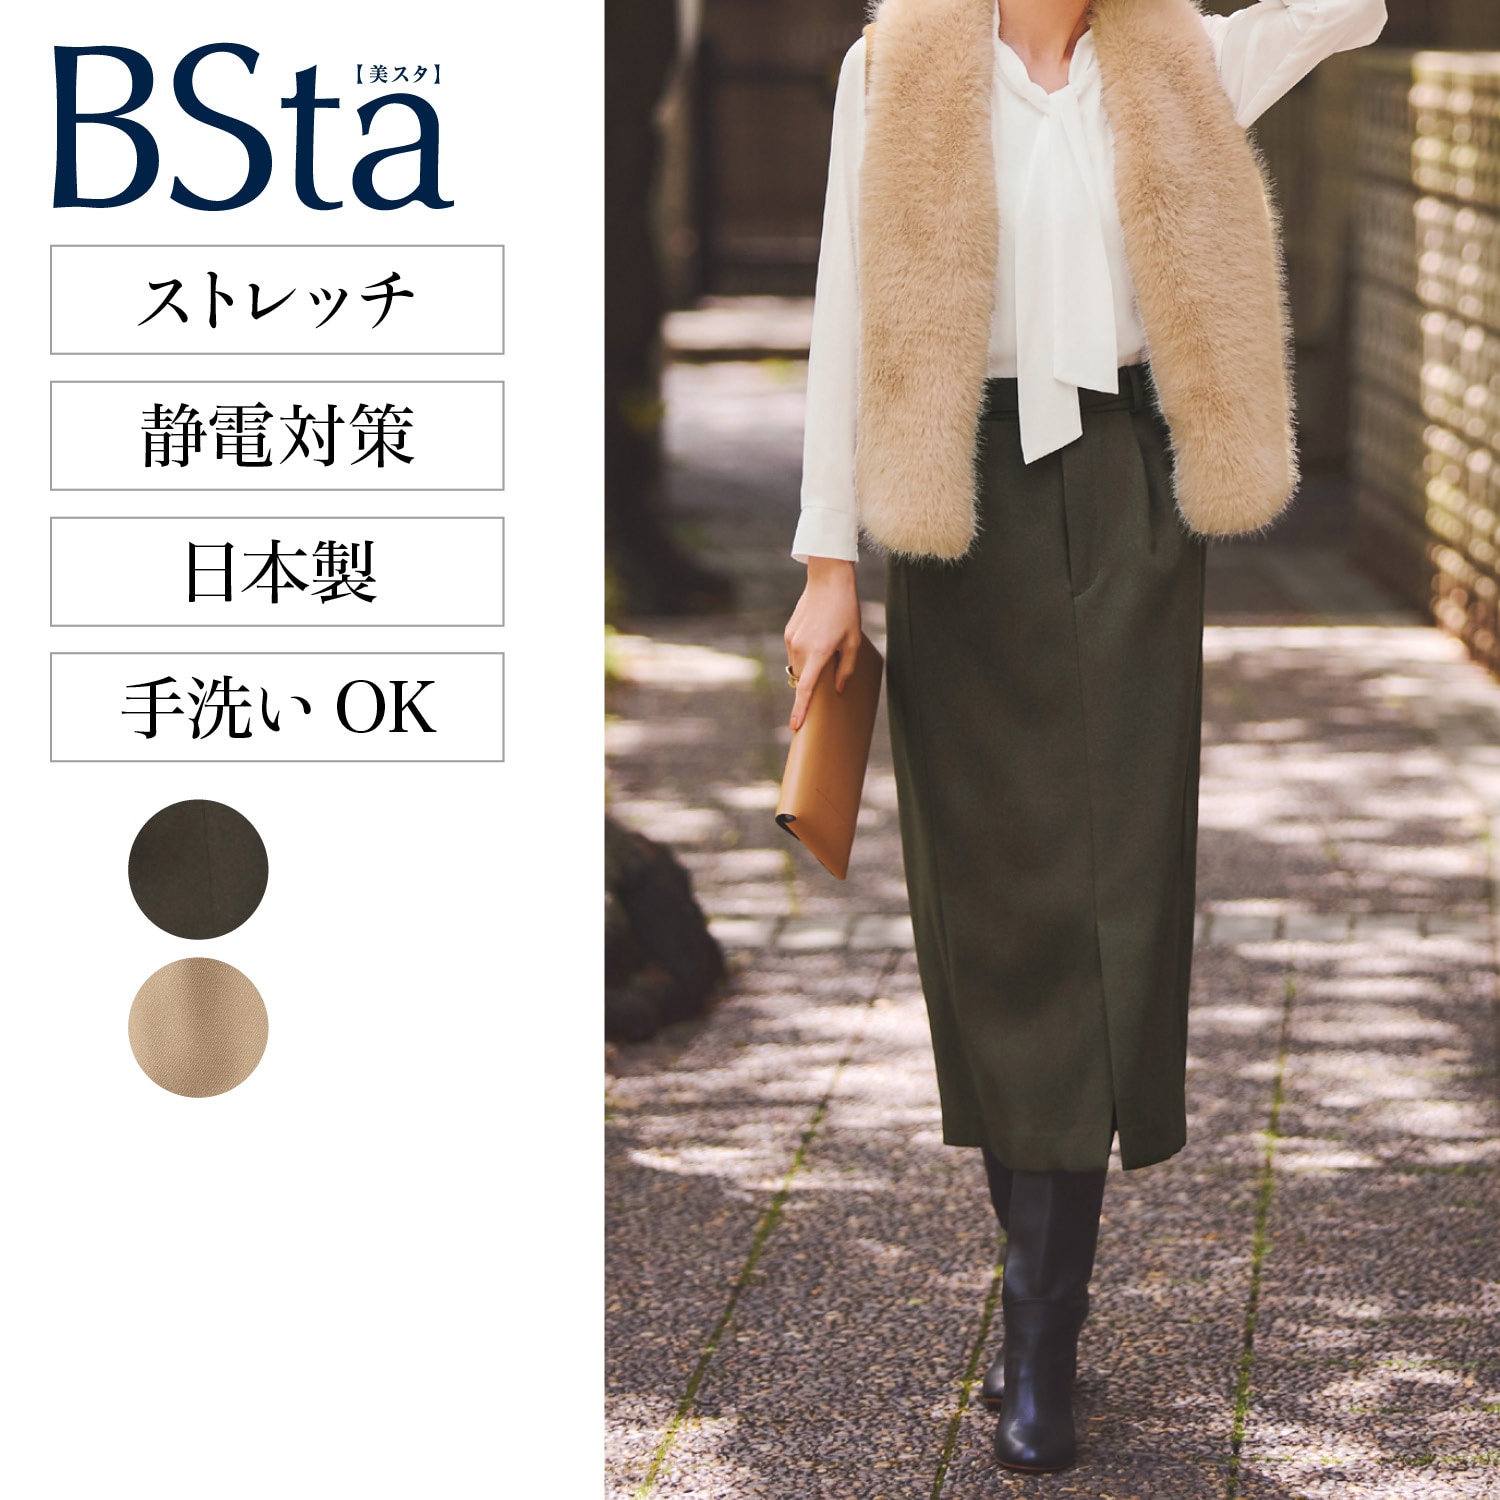 【スタイルノート/StyleNote】【BSta】Iラインスカート[日本製]画像